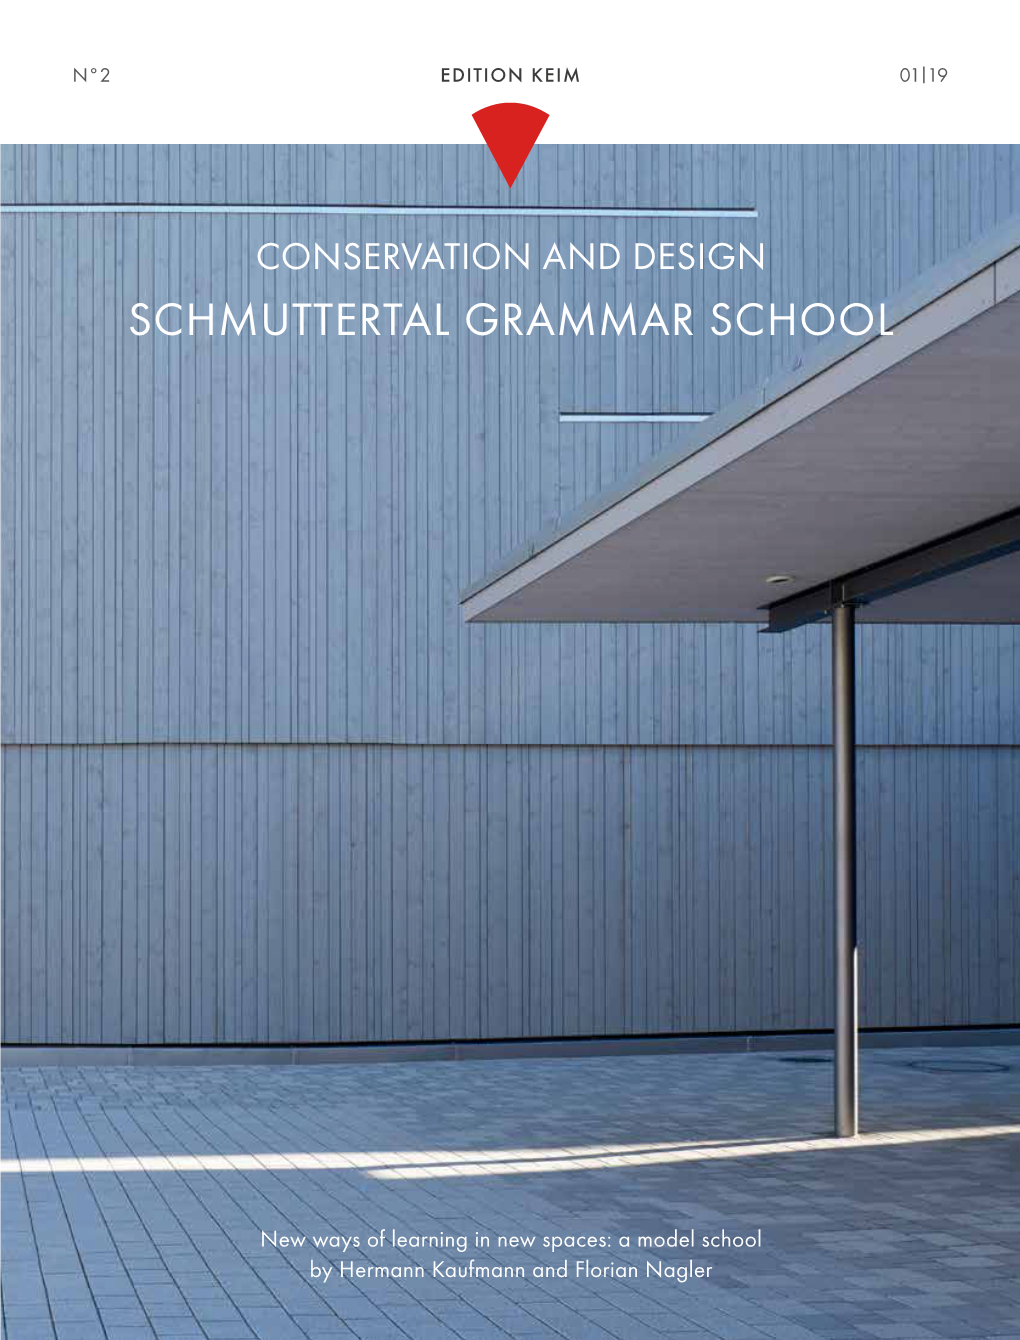 Schmuttertal Grammar School